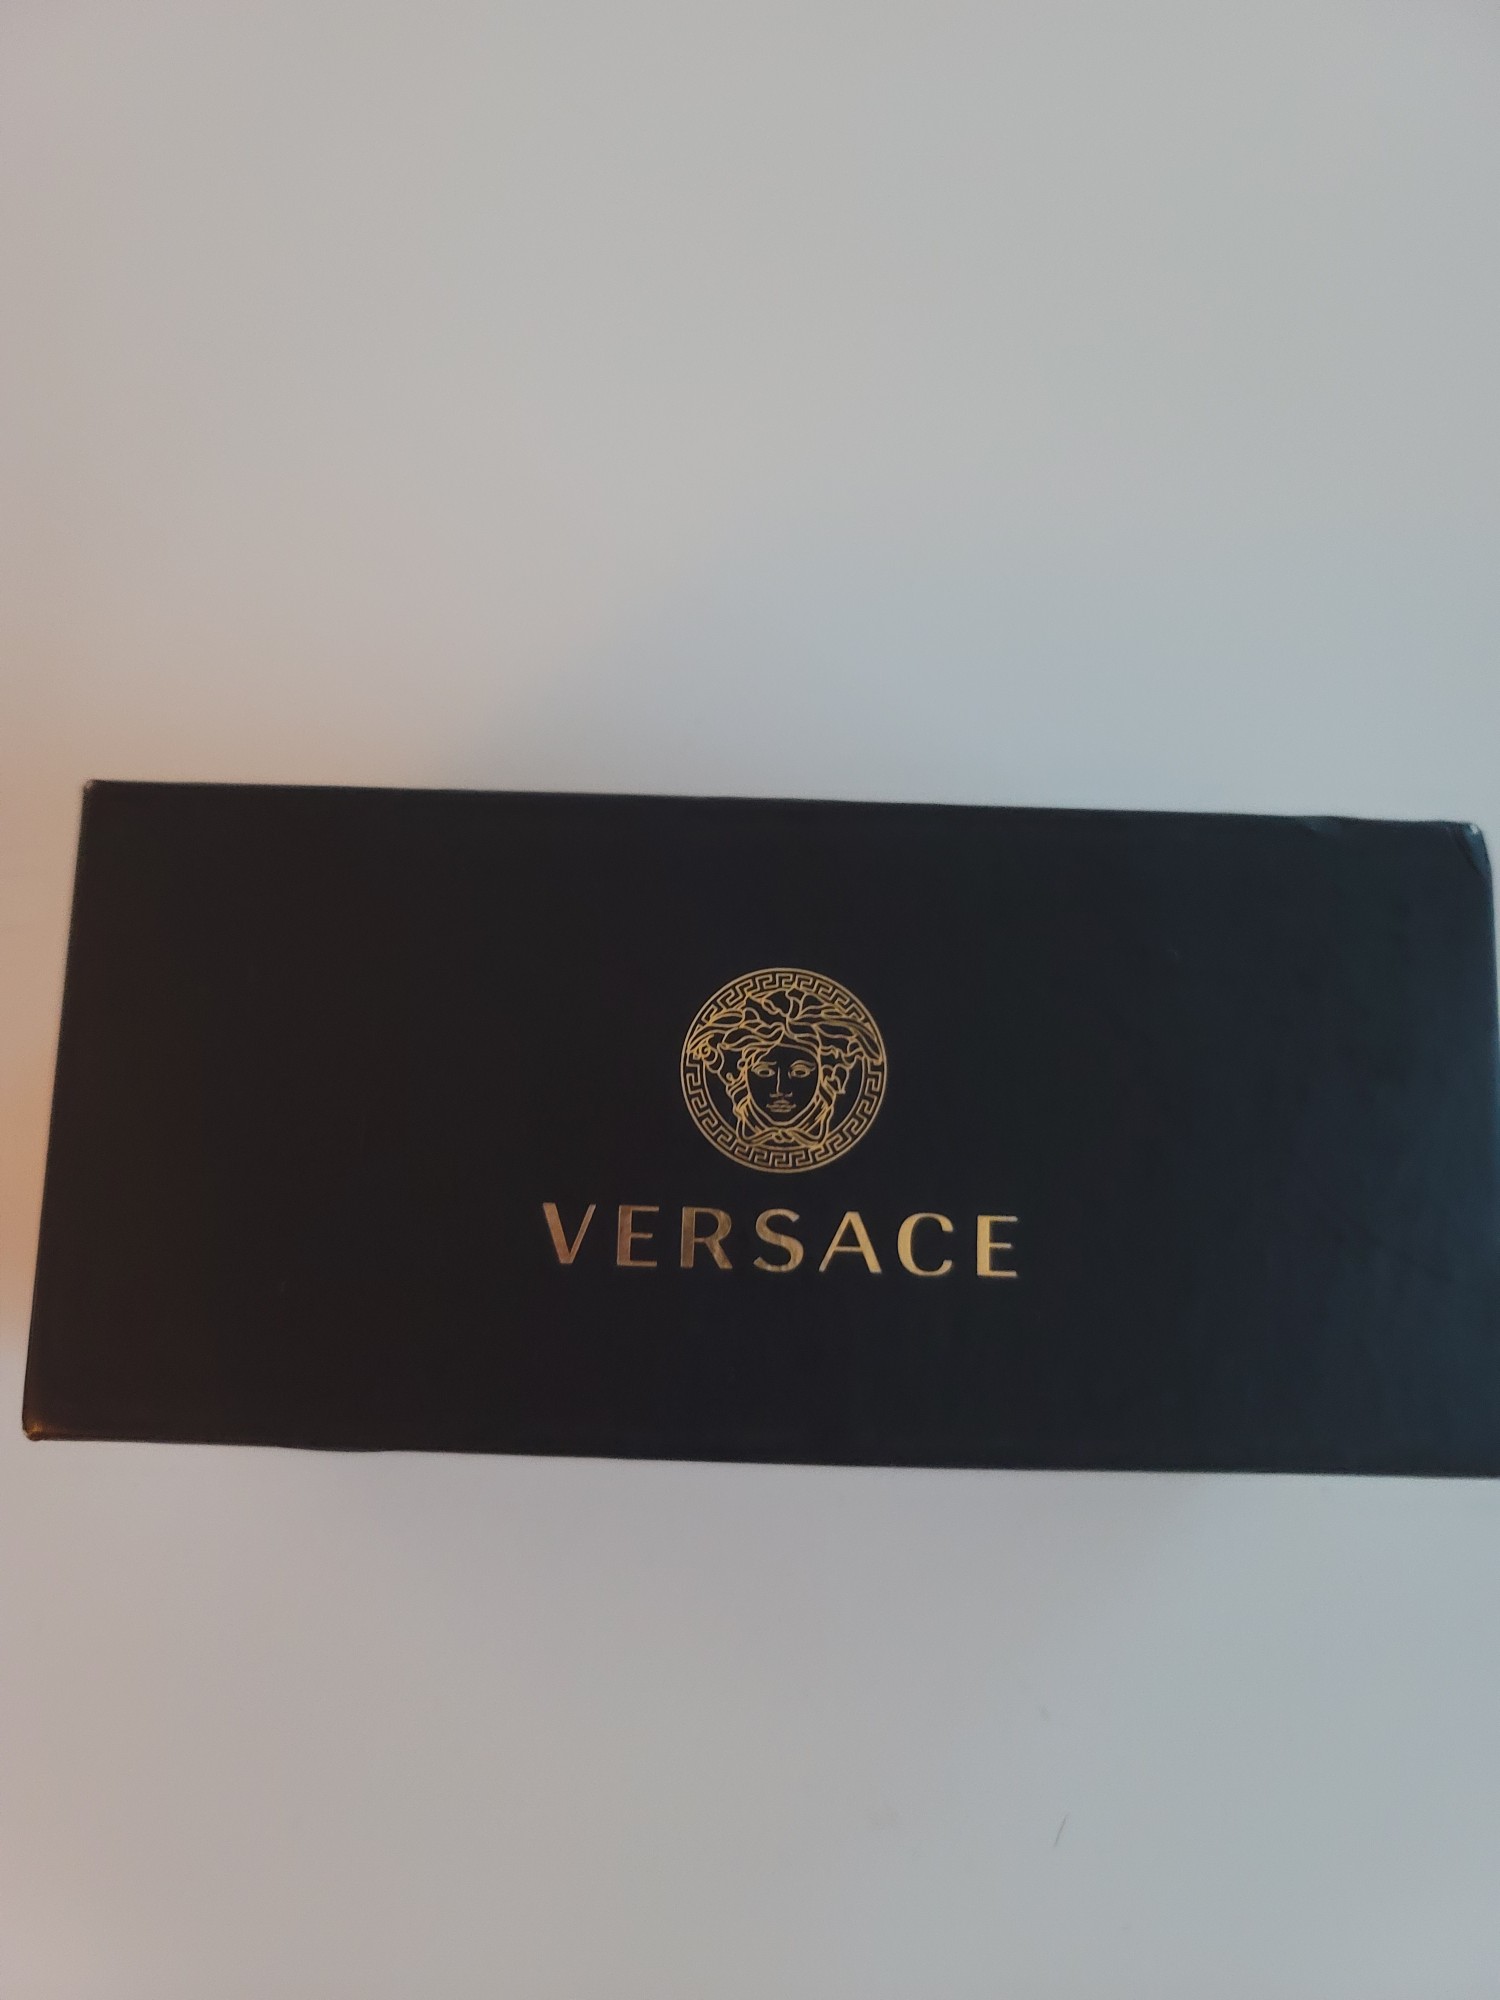 joyas, relojes y accesorios - Lentes de sol originales de la marca Versace